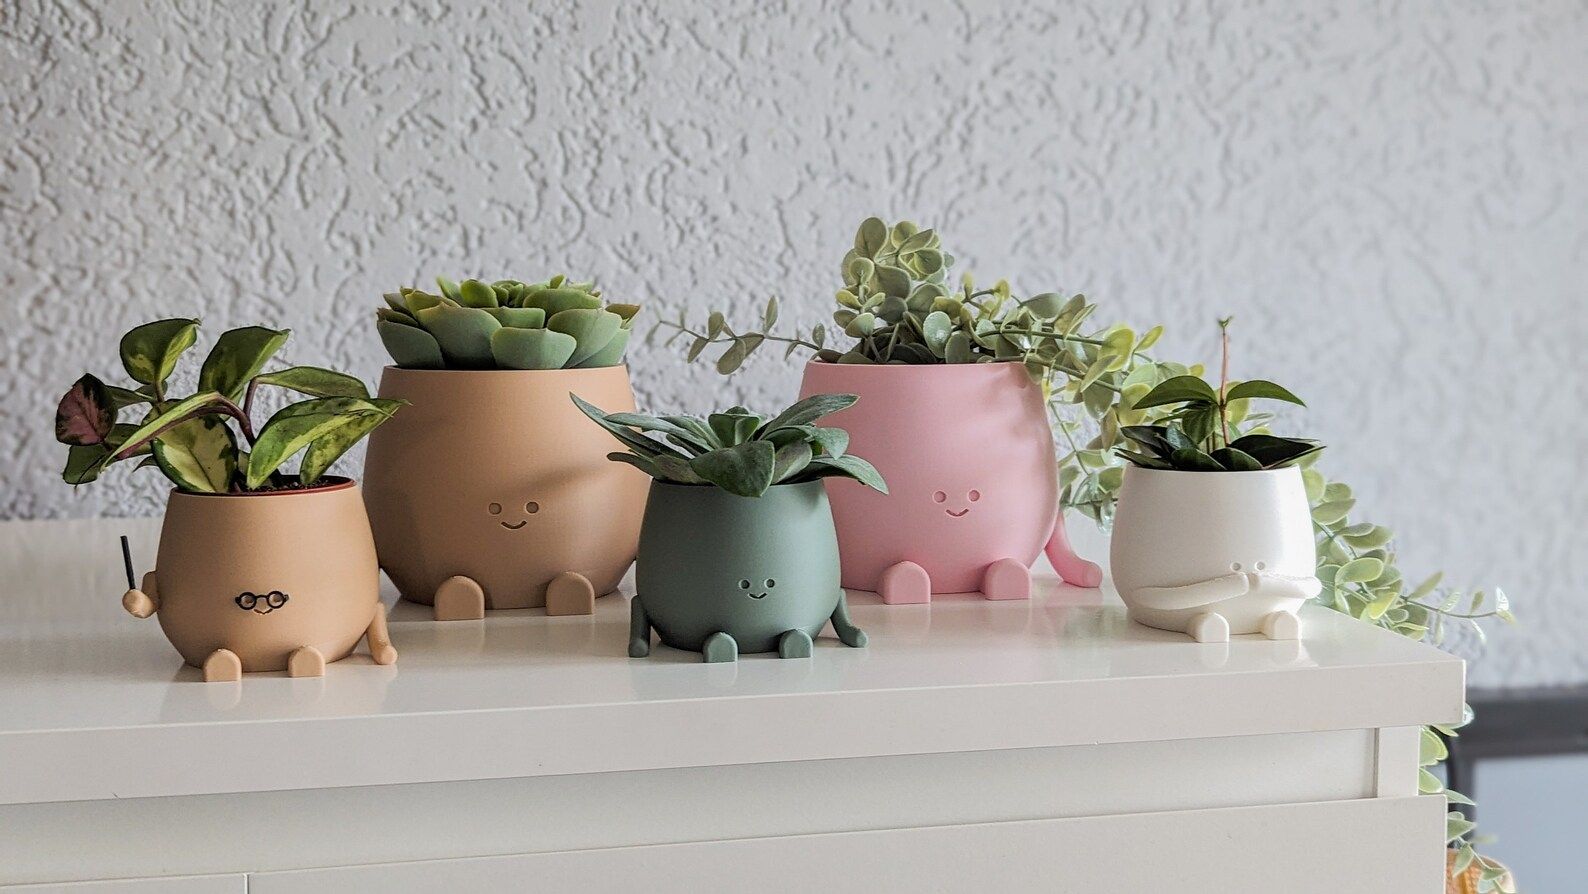 Plant Pot Face Happy Cute Plant Pot Cute Decoration Indoor Planter Pot Happy Face Plant Lover Gif... | Etsy (US)